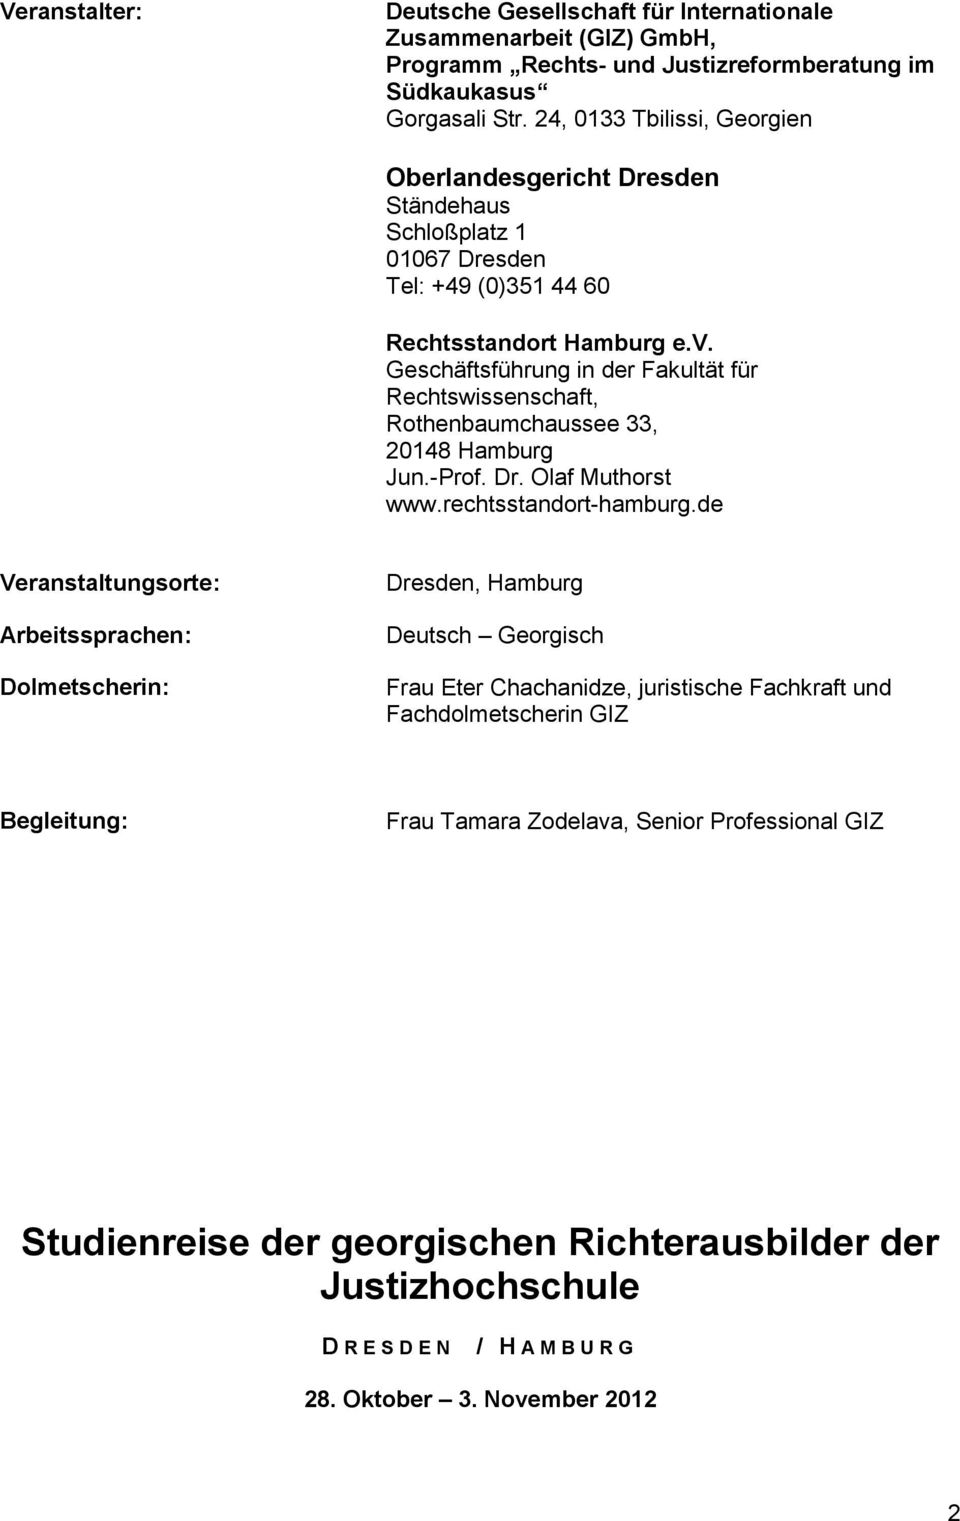 Geschäftsführung in der Fakultät für Rechtswissenschaft, Rothenbaumchaussee 33, 20148 Hamburg Jun.-Prof. Dr. Olaf Muthorst www.rechtsstandort-hamburg.